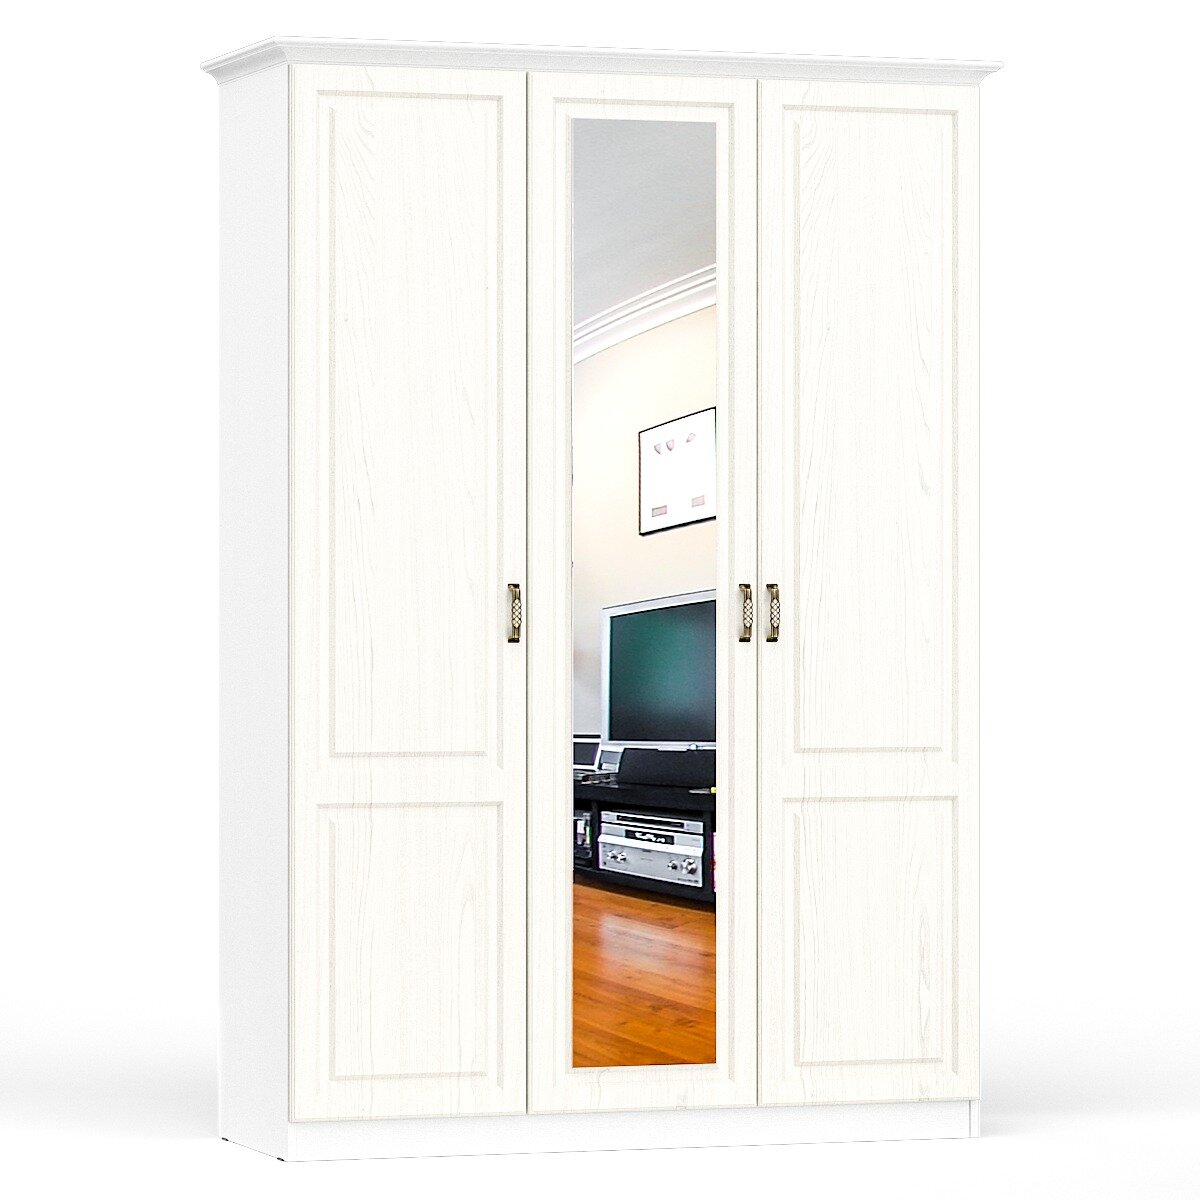 Шкаф трехстворчатый для одежды в прихожую, спальню или гостиную 150см ясень ваниль/белый - НЖ0706